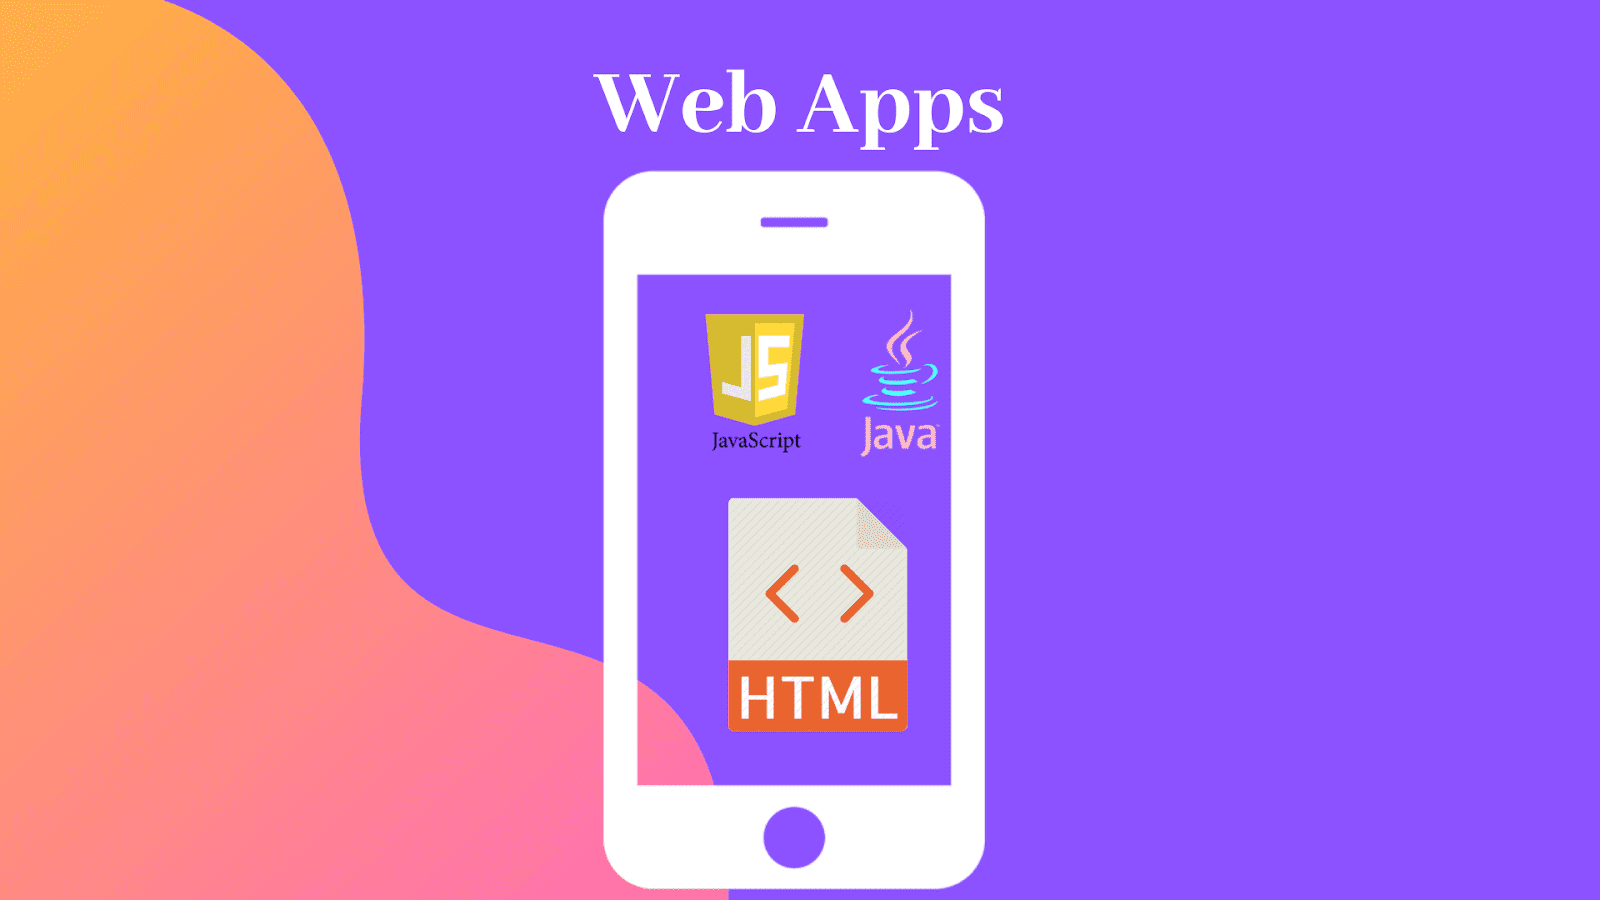 Web Apps